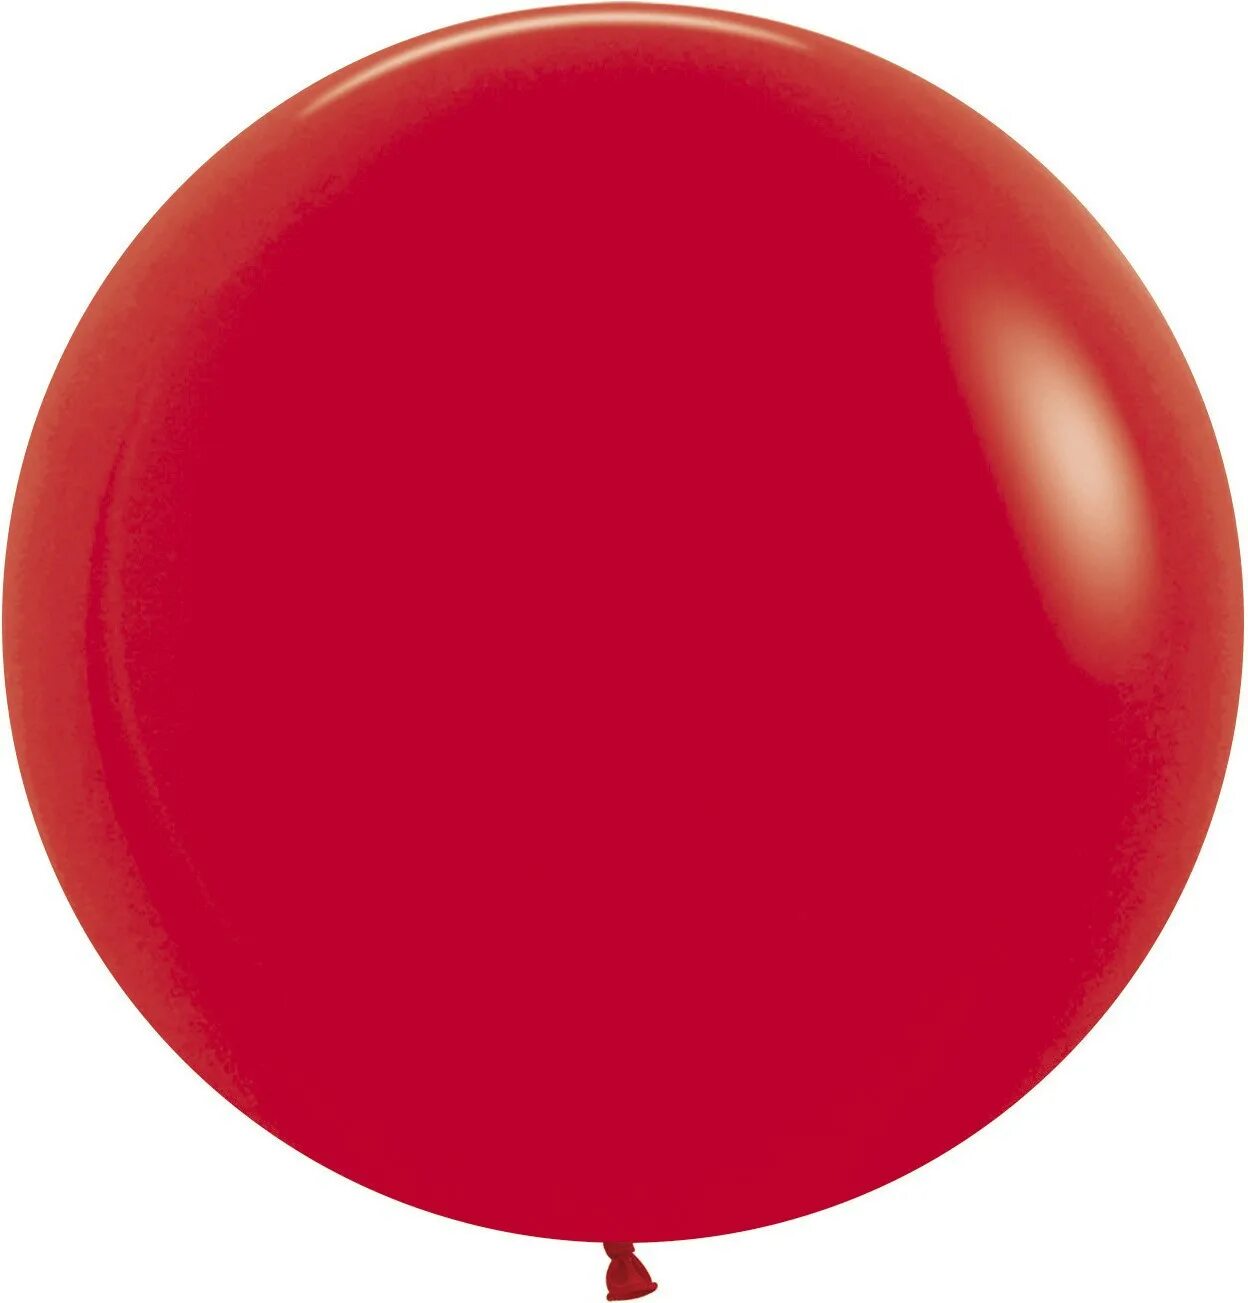 Шары 48 см. Черный шар 60 см Семпертекс. Шар гигант 61 см. Красный шар. Шар красный пастель.